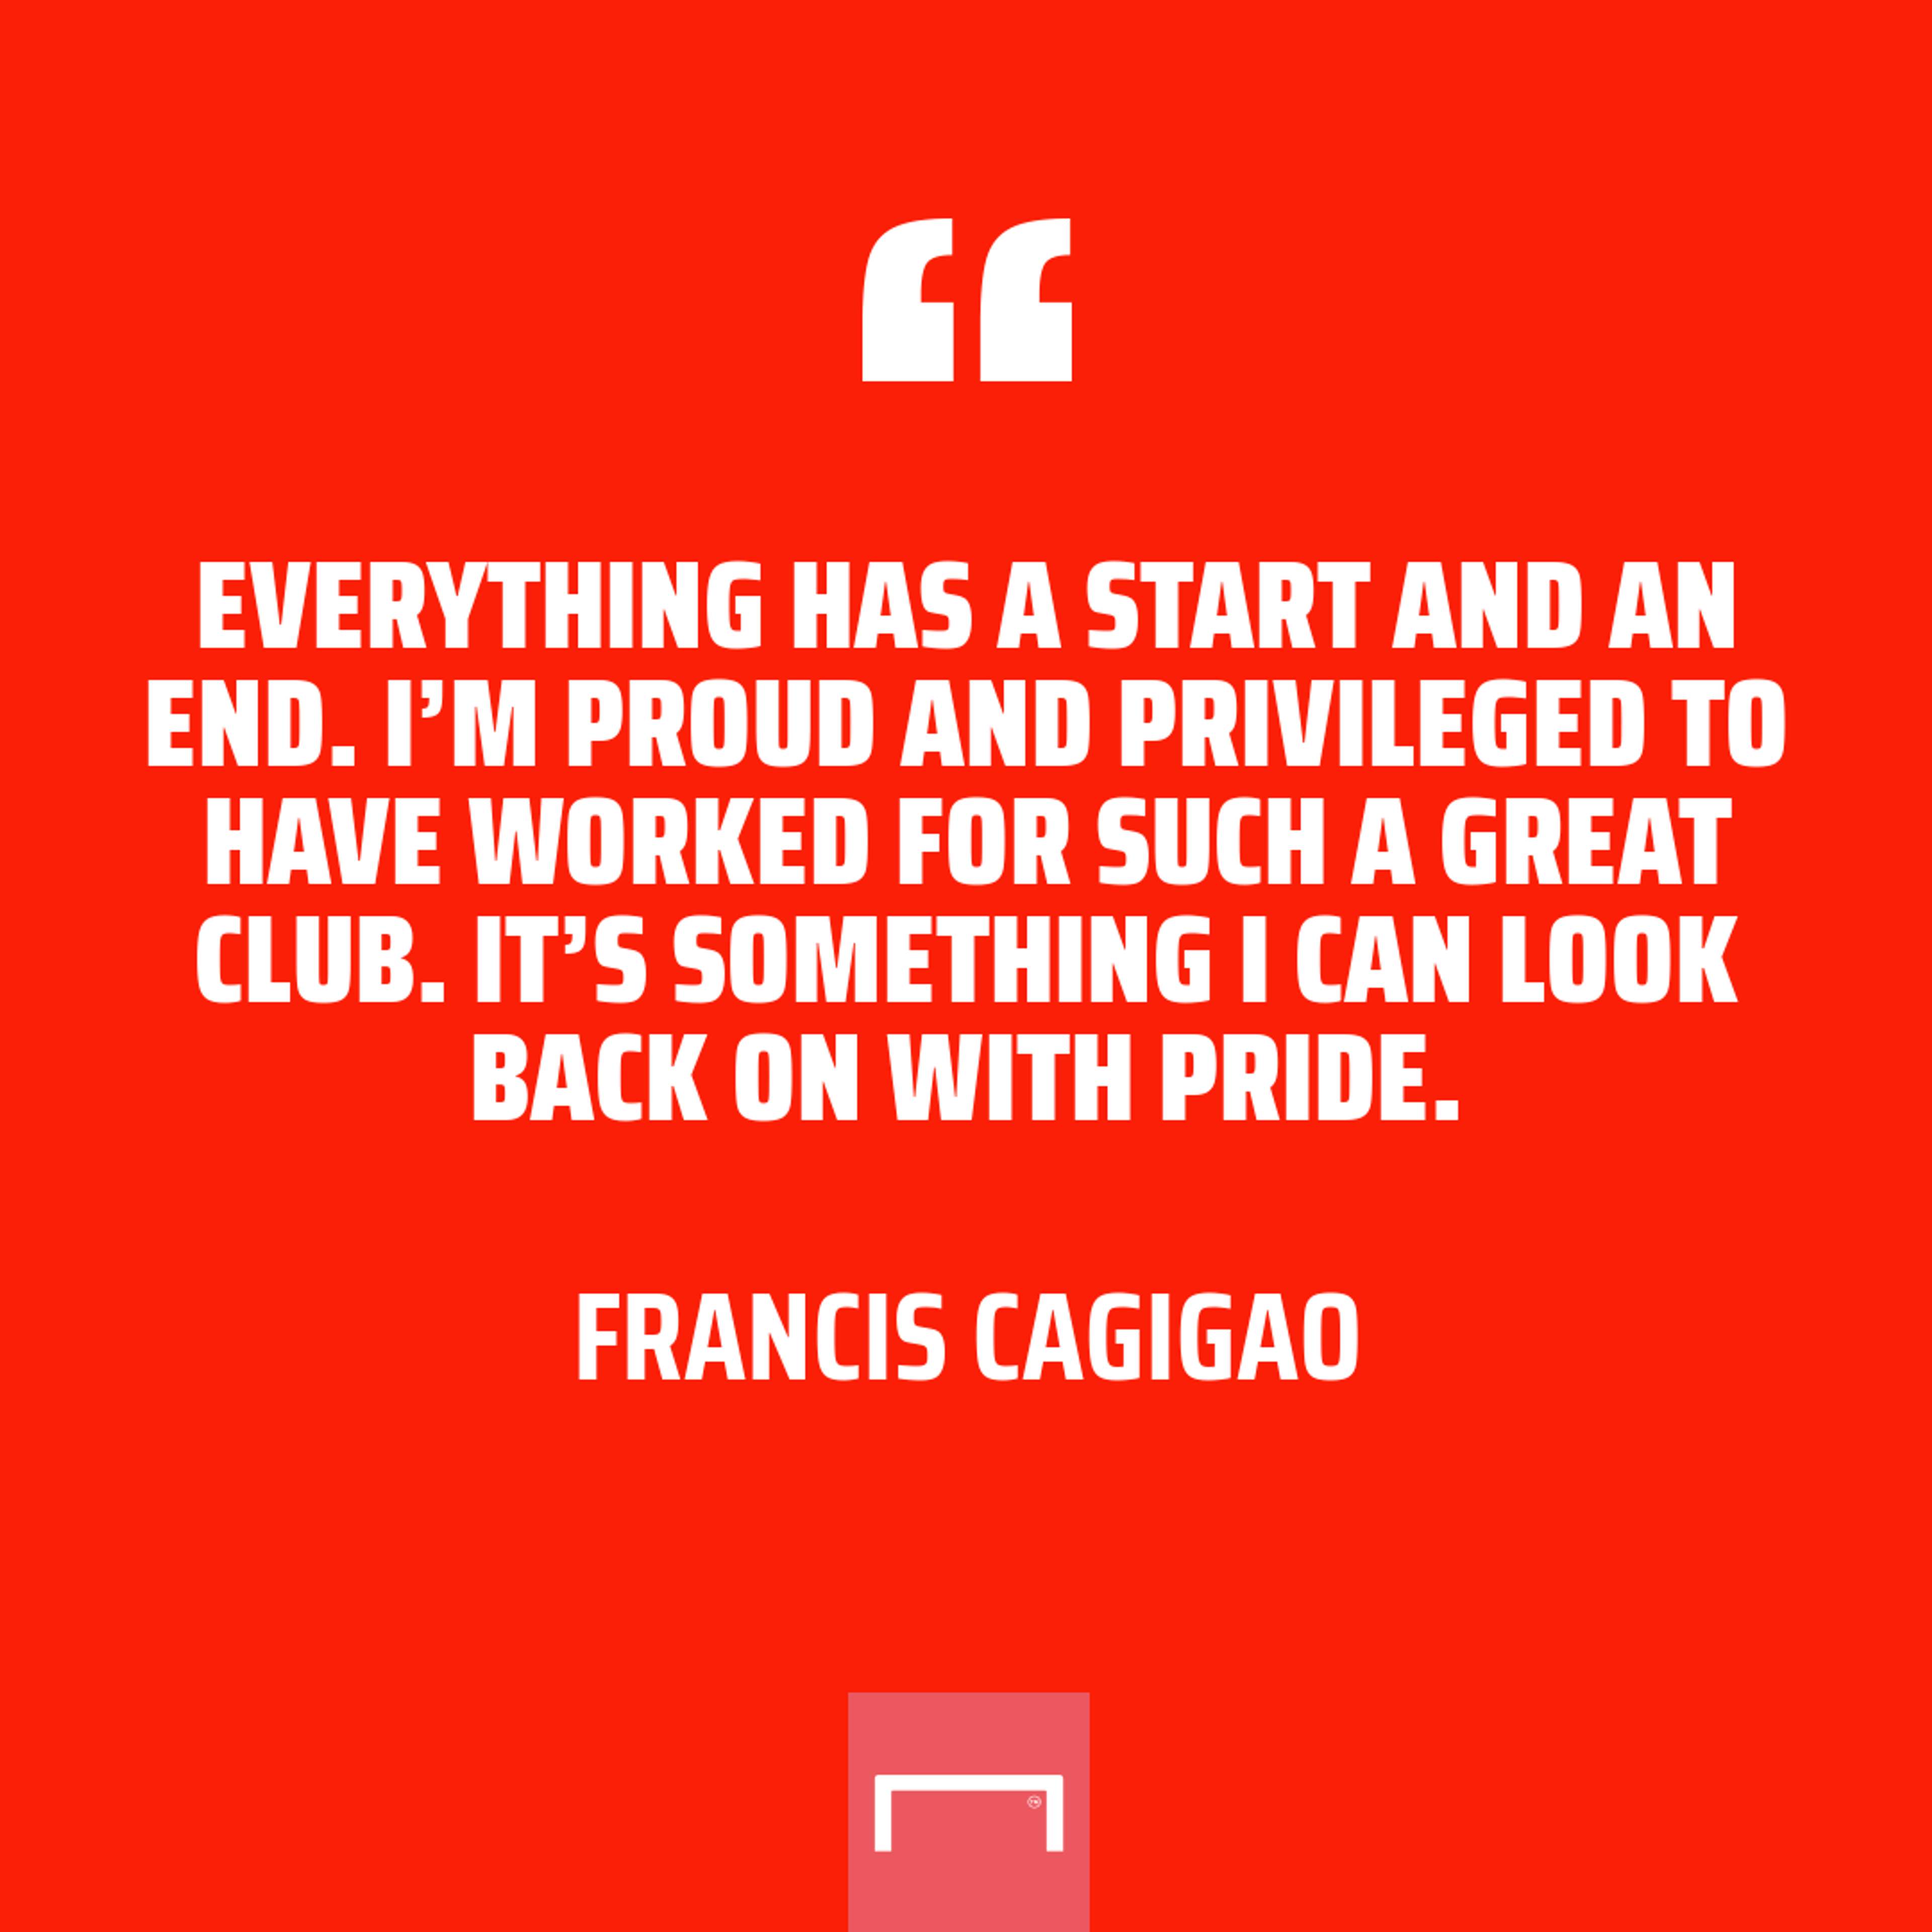 Francis Cagigao